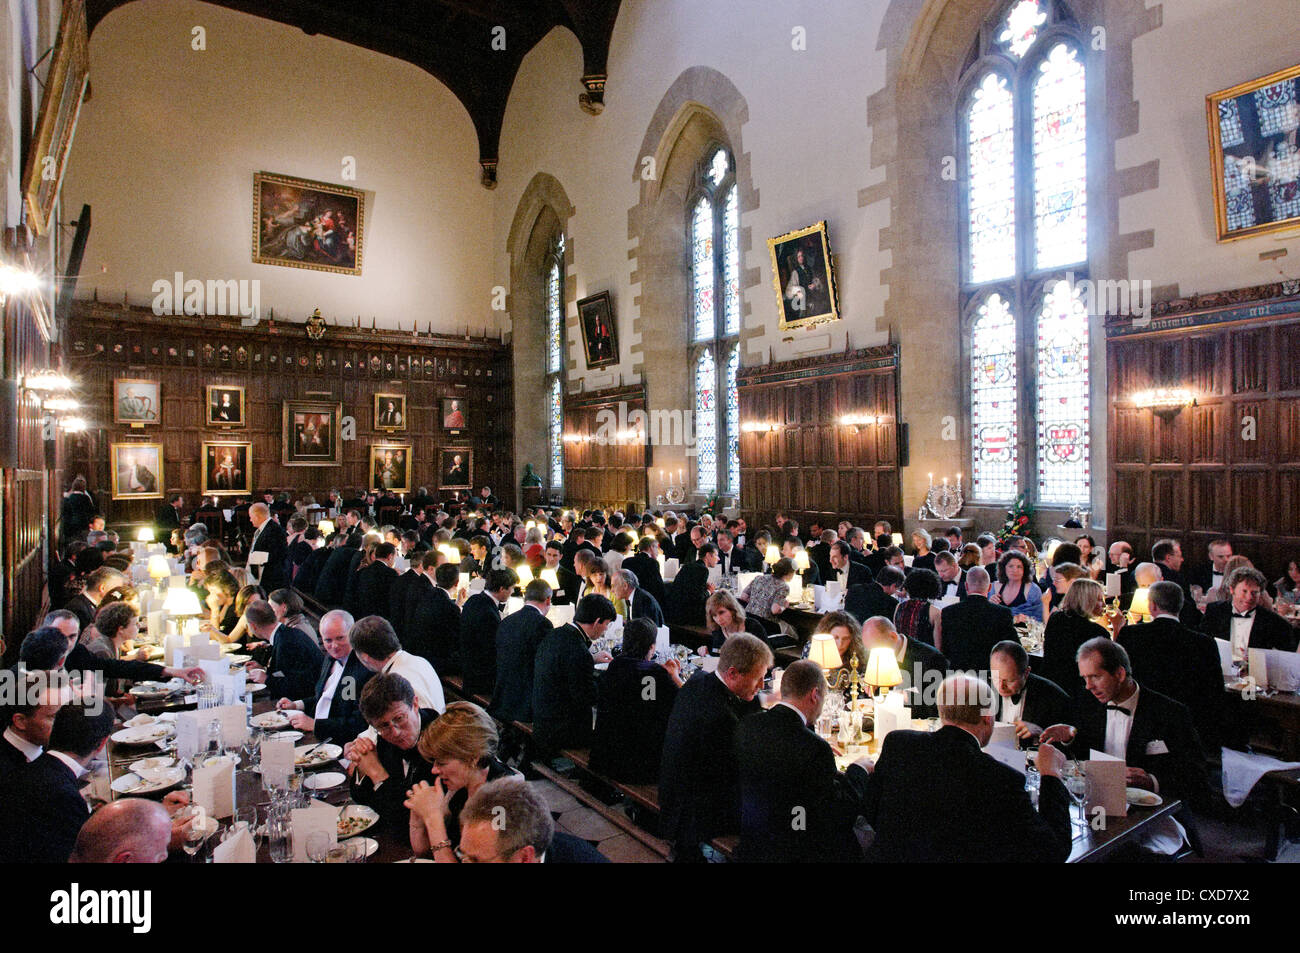 Oxbridge : Oxford college réception officielle au New College, Oxford University, UK Banque D'Images